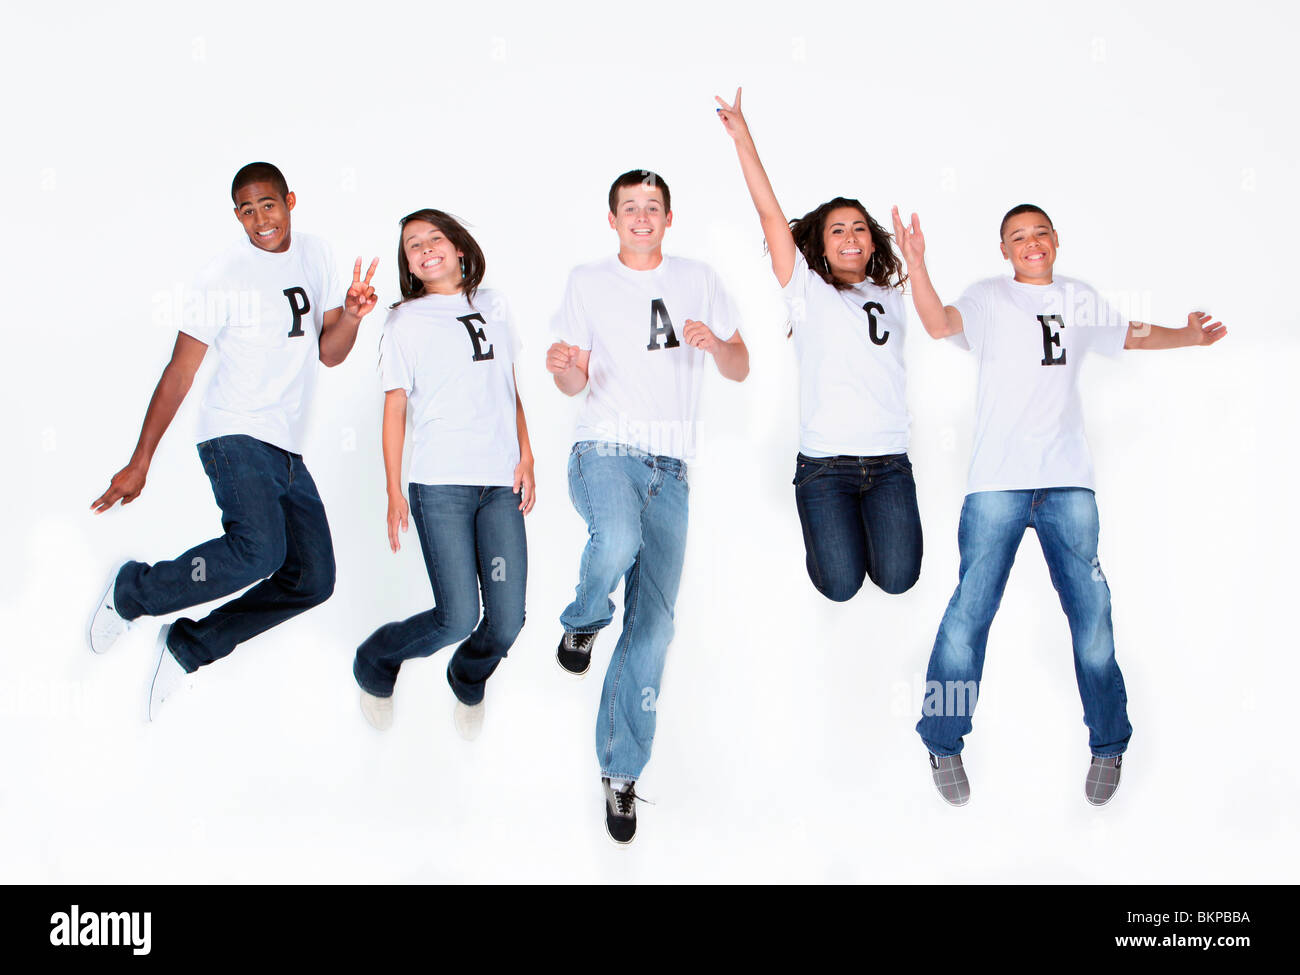 Eine Gruppe von Jugendlichen springen In die Luft mit ihre T-Shirts Rechtschreibung "Frieden" Stockfoto